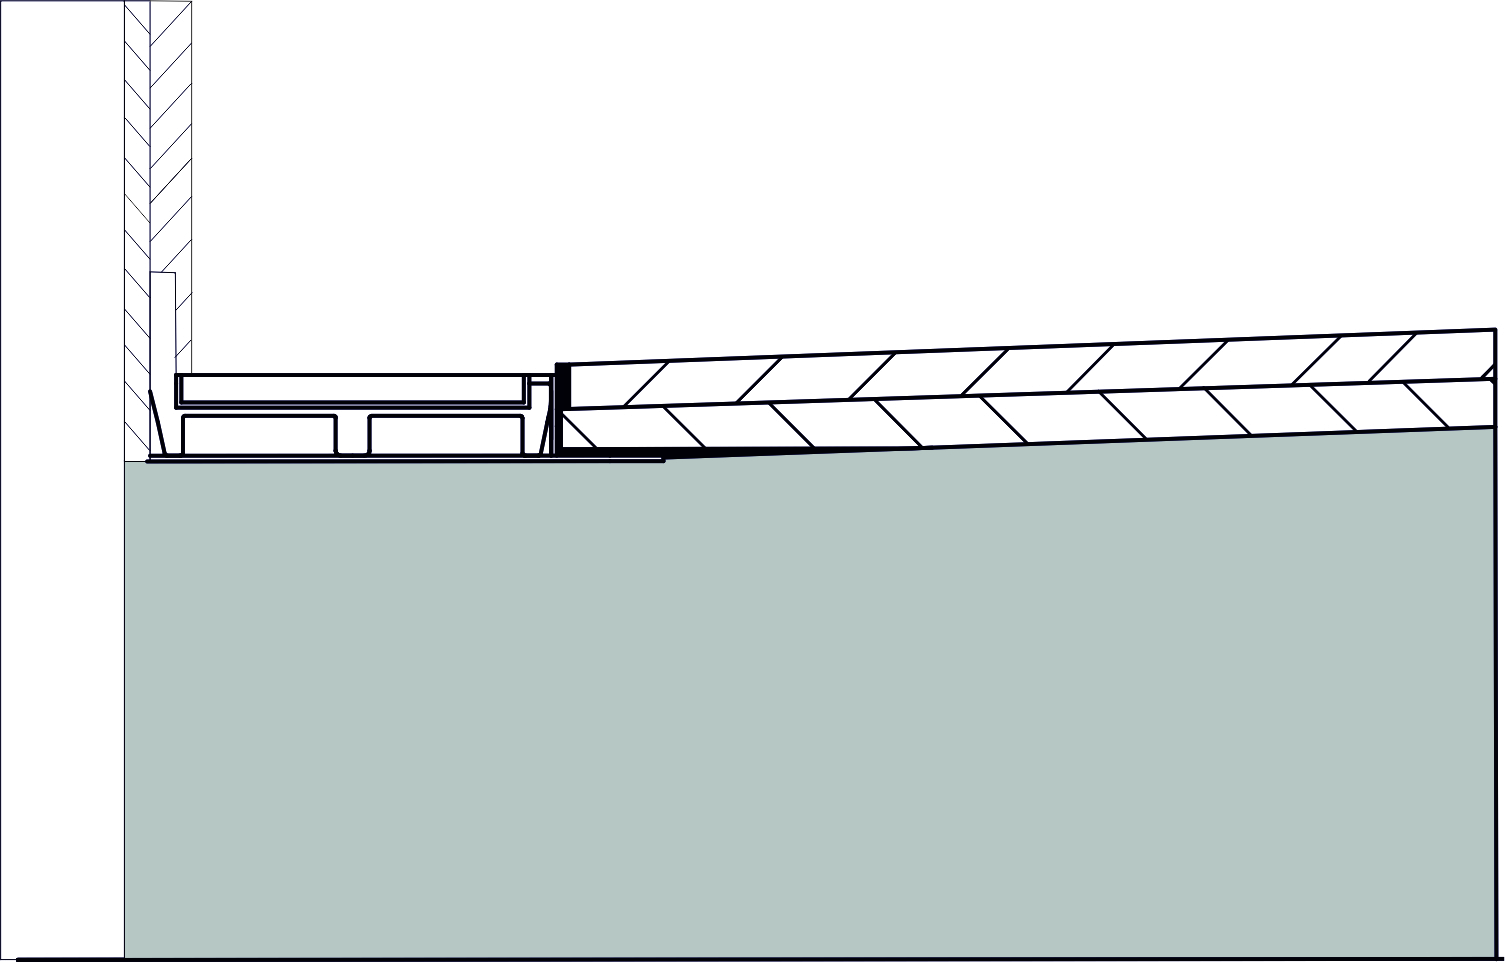 Schemat obrazujący jak powinno wyglądać ułożenie płytek  ze spadkiem jednostronnym wokół odpływu liniowego przyściennego (fot. VOGI).